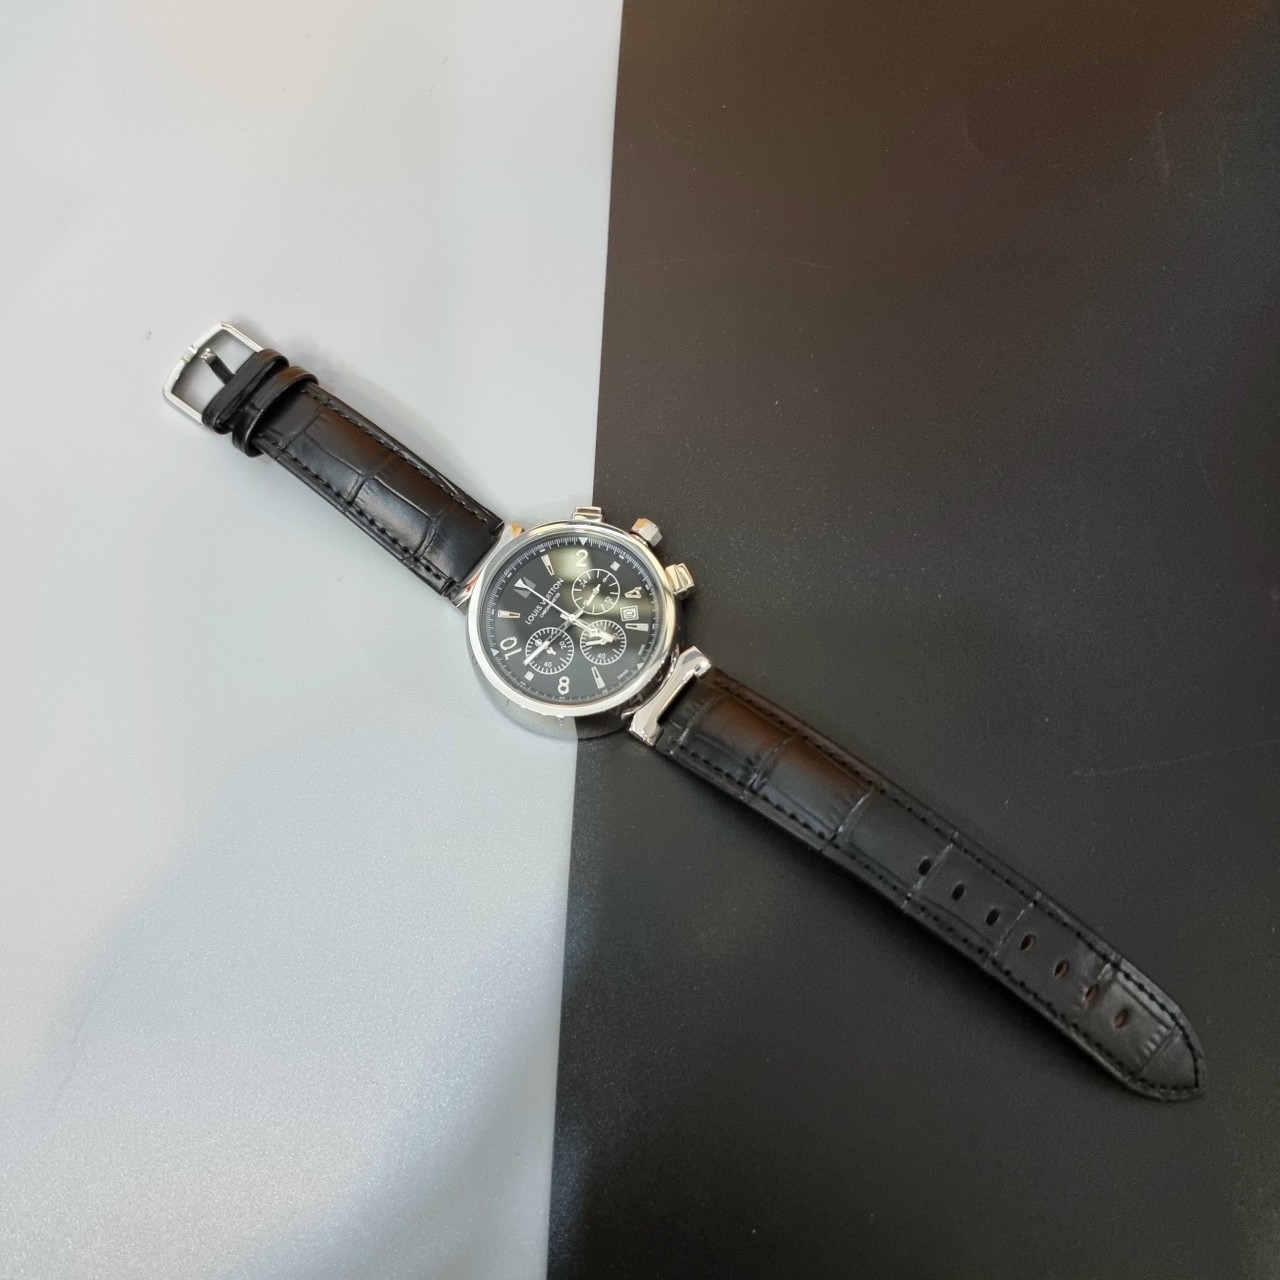 Đồng hồ Louis Vuitton của nước nào? Đánh giá chất lượng và giá bán -  Thegioididong.com